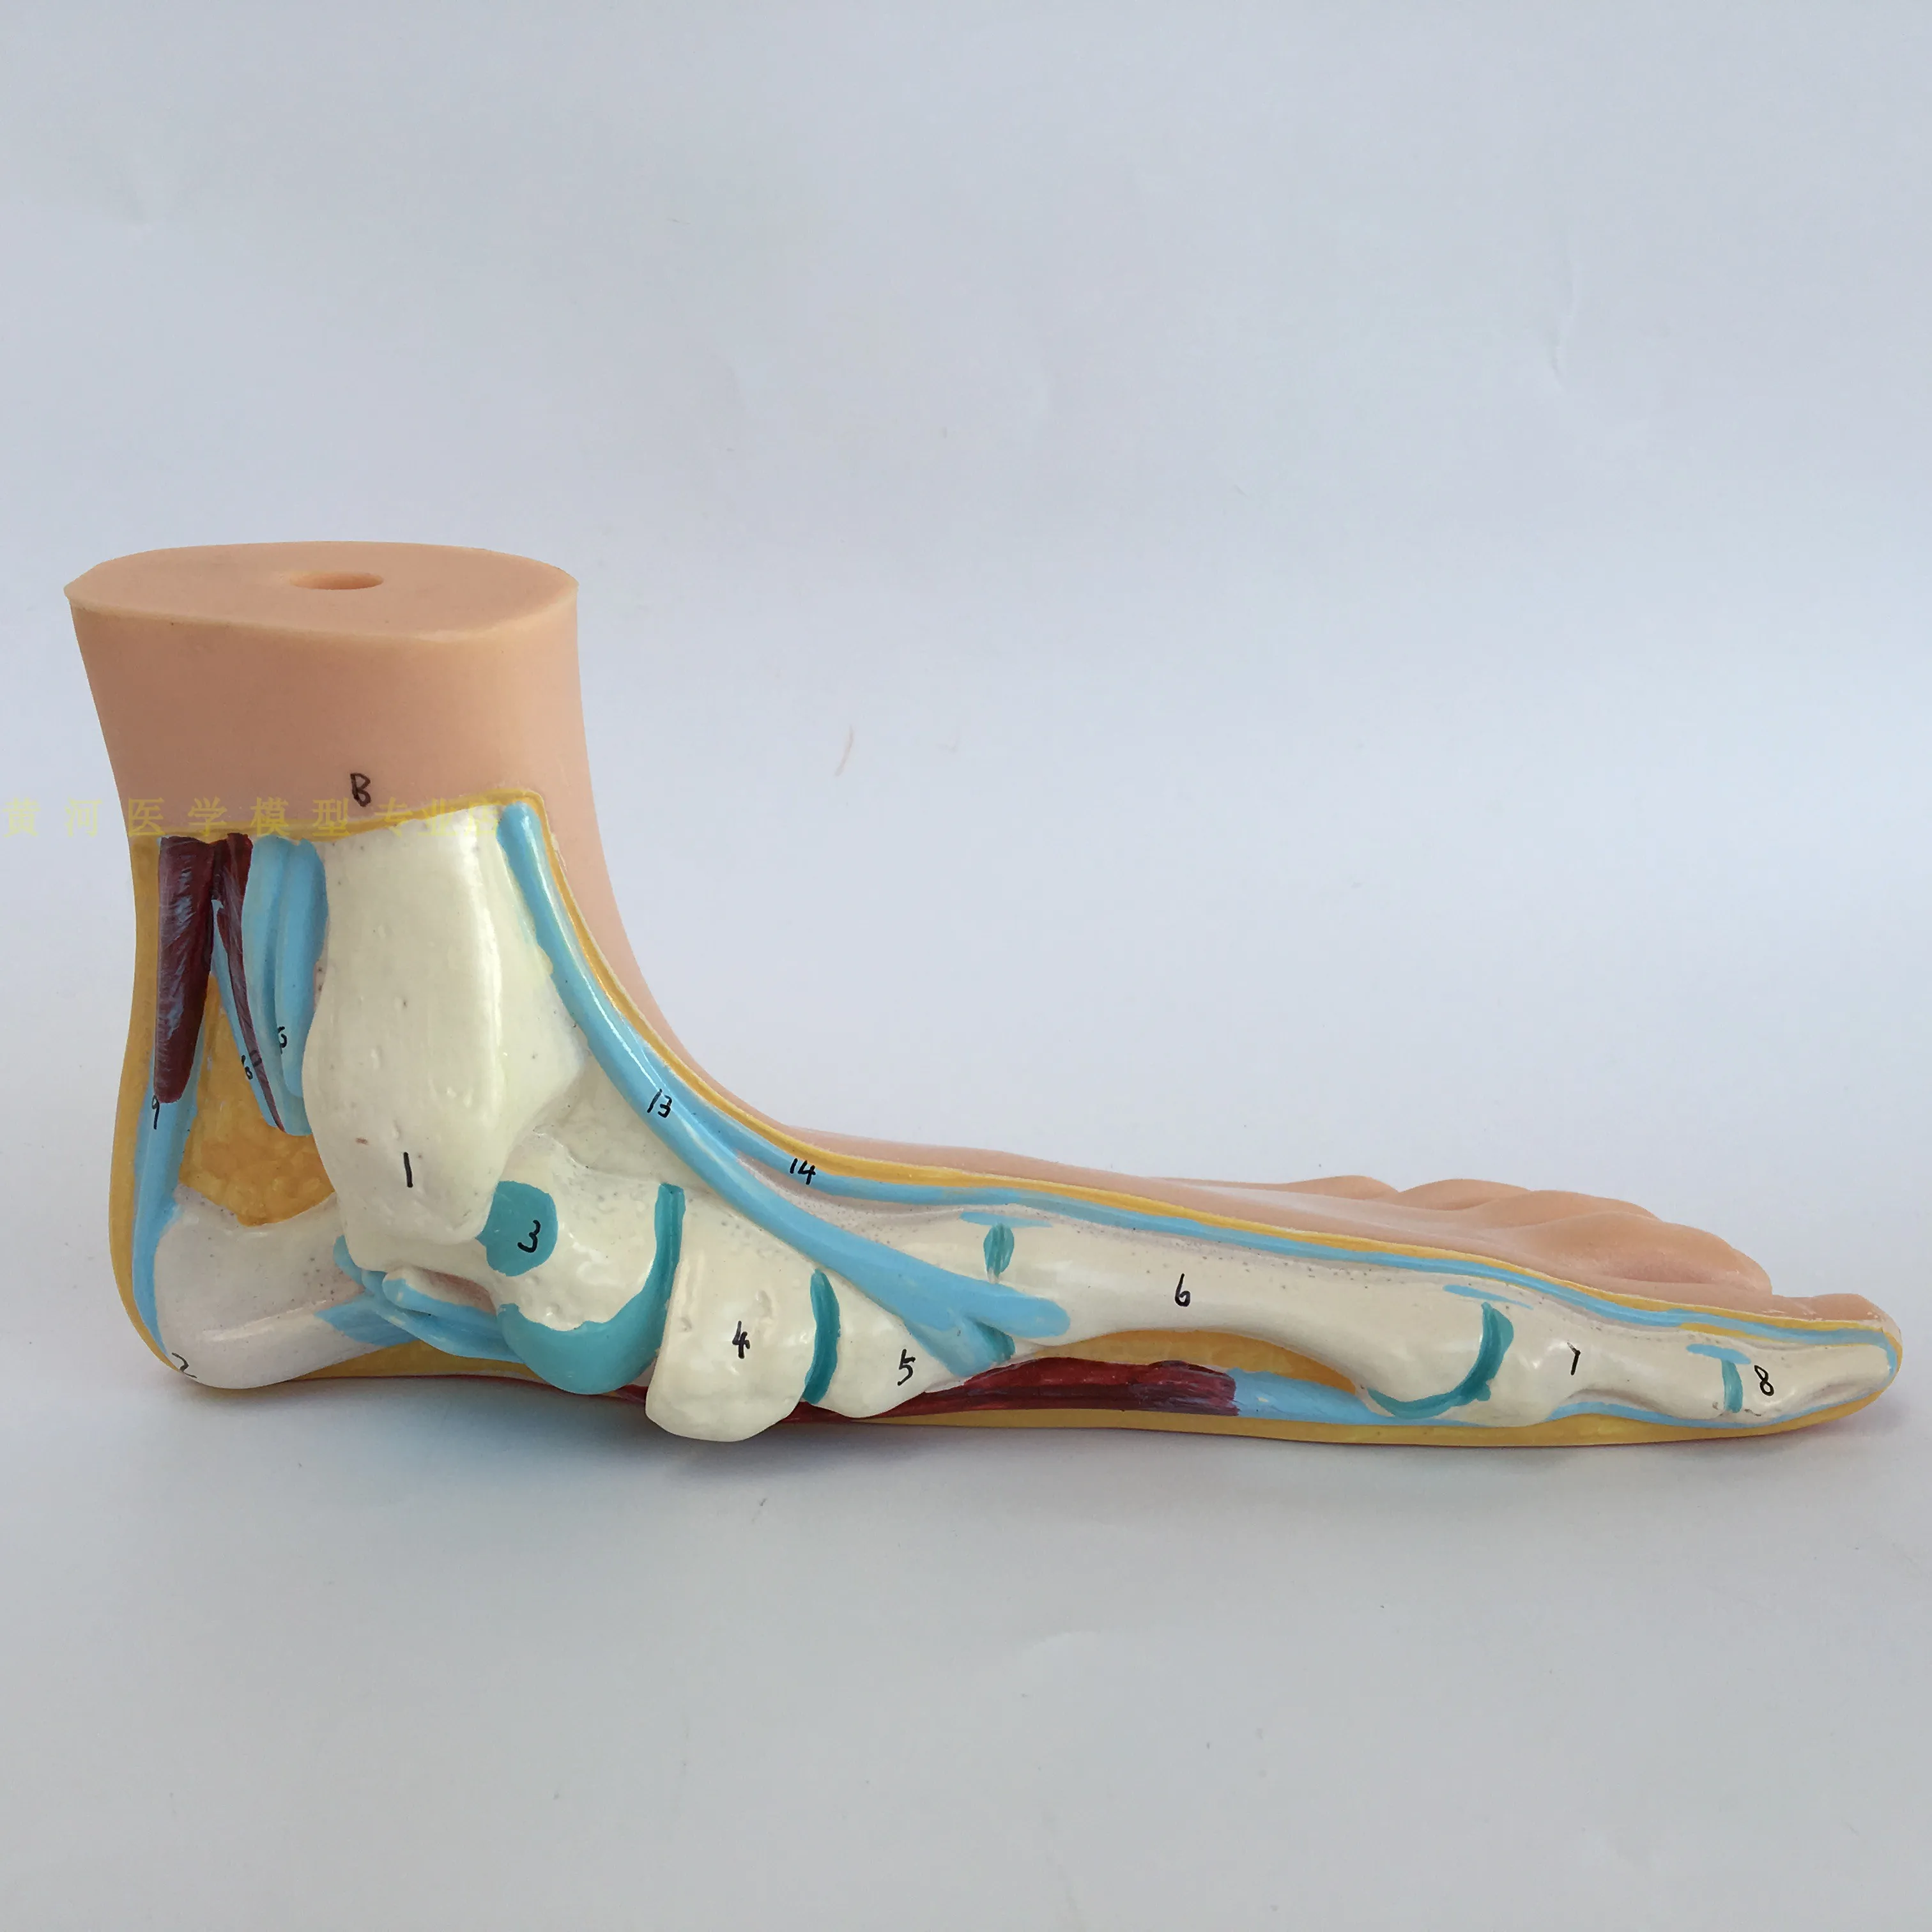 Medicinos Anatomija Žmogaus Pėdos, Normalios Pėdos Plokščios ir Išgaubtas Pėdos Anatomijos Modelis Žmogaus Sketelon Modelis Vienodo aukščio Arkos Kojų 3pcs/set